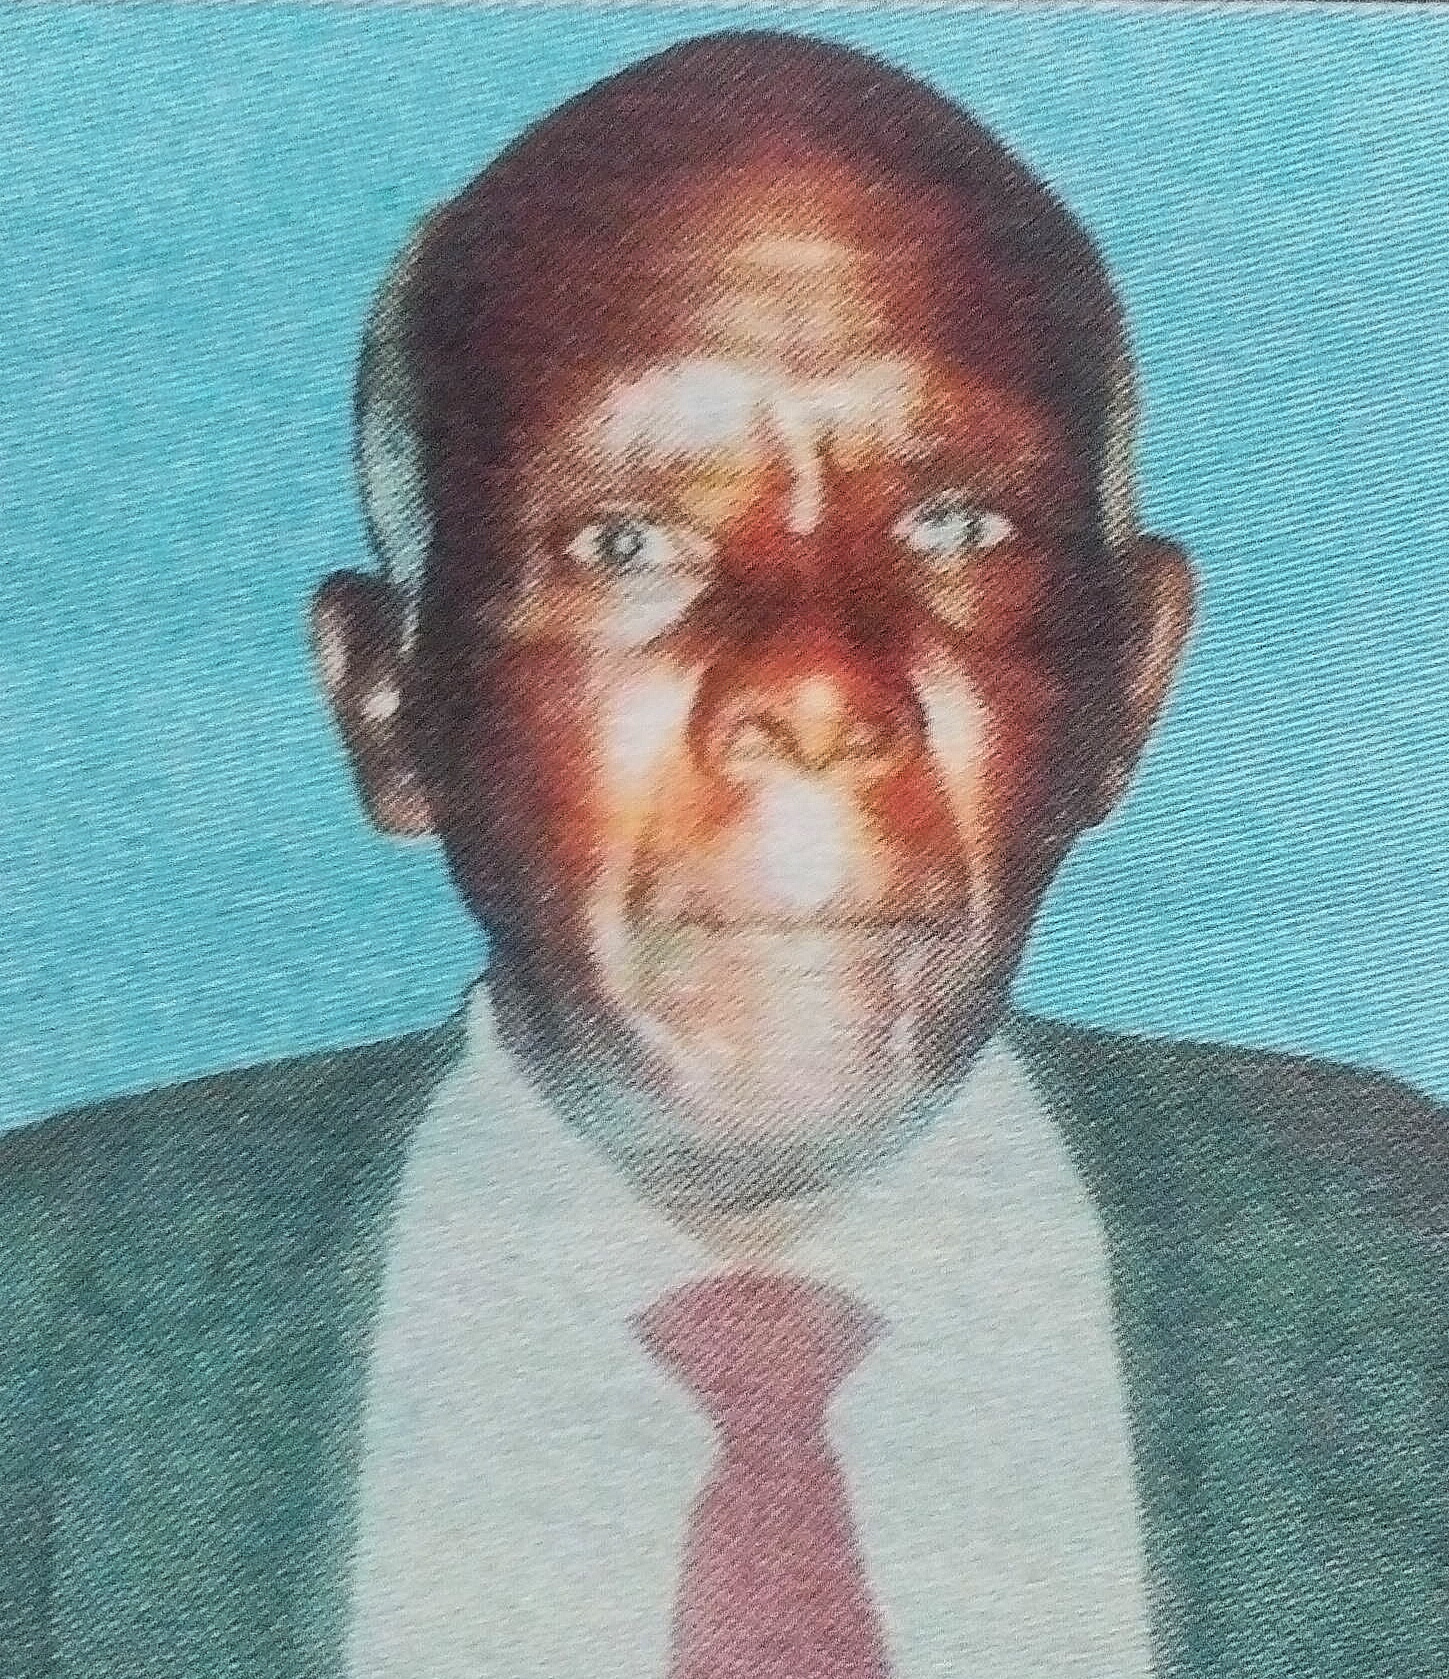 Obituary Image of Mzee Moses Ndung'u Mwanu (Karemba)